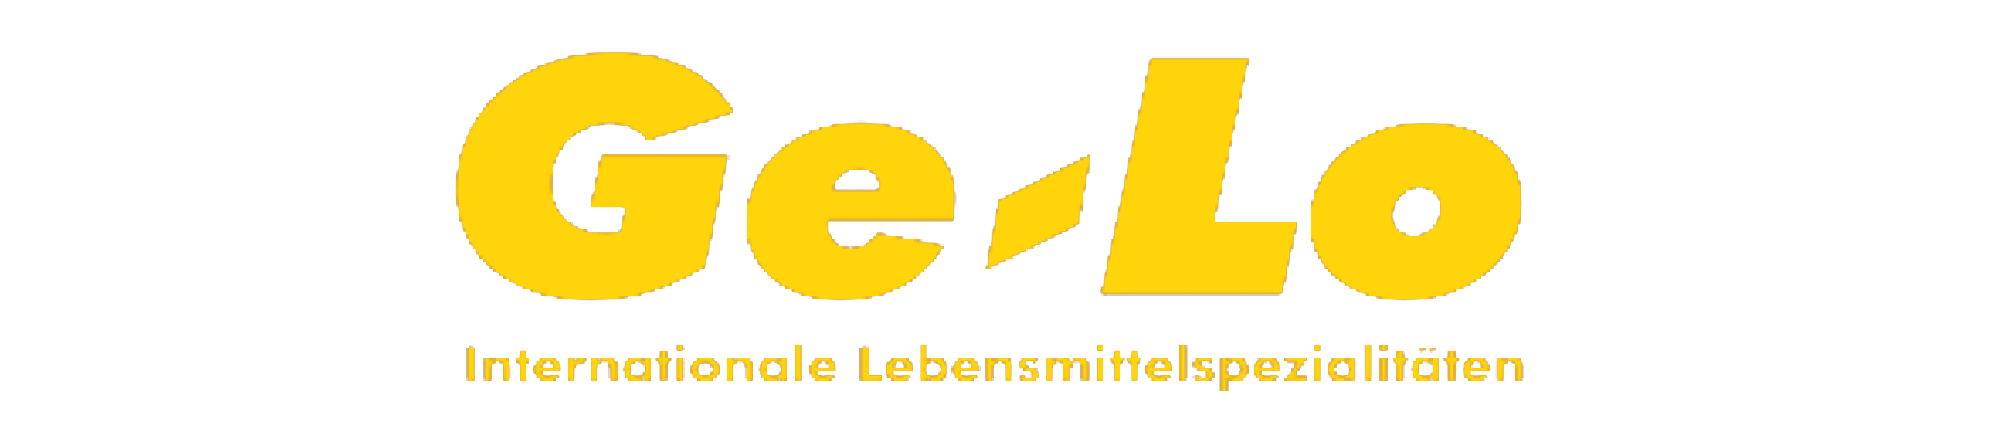 GE-LO logo